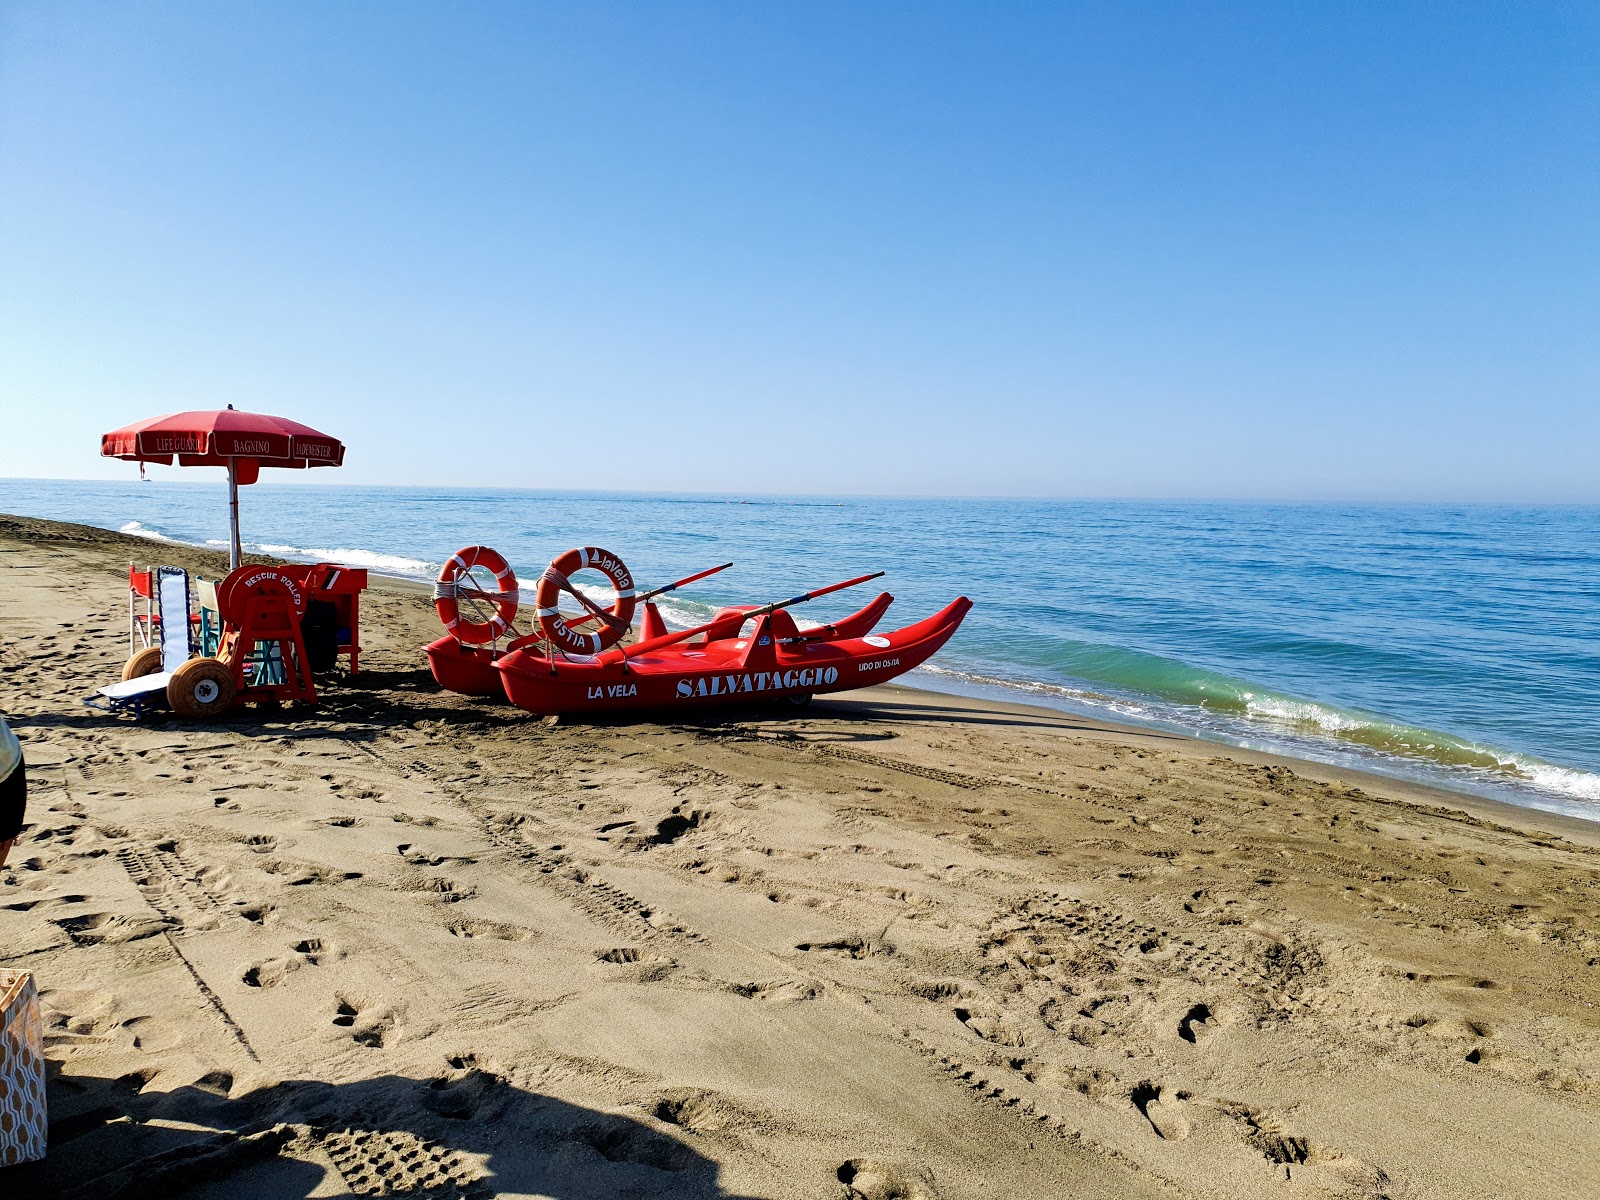 Foto av La spiaggia di Bettina med turkos rent vatten yta